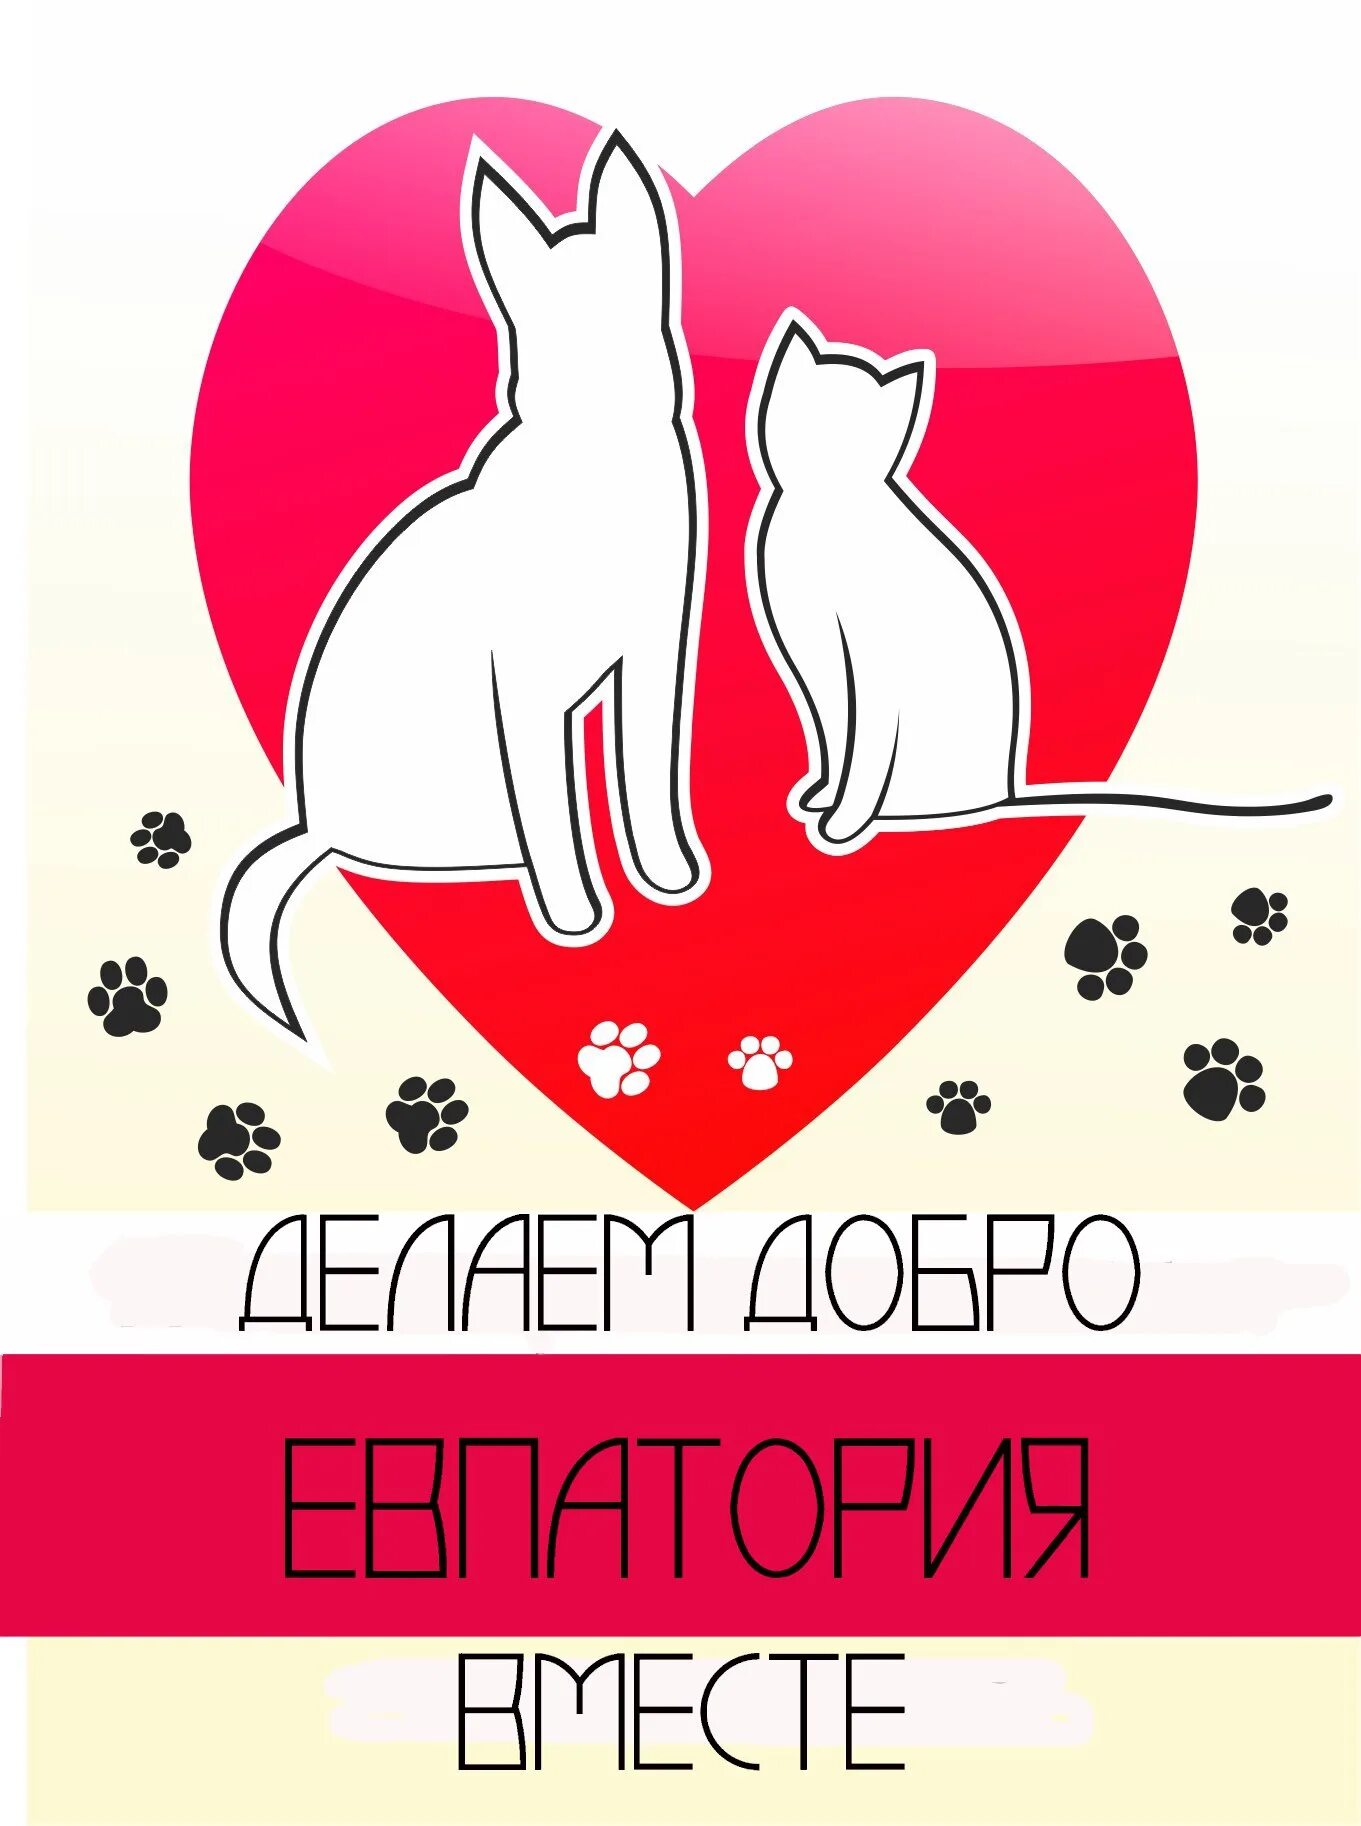 Волонтерские группы помощи животным. Помощь животным. Помощь бездомным животным. Помощь бездомным животным логотип. Эмблема Форда помощи животным.